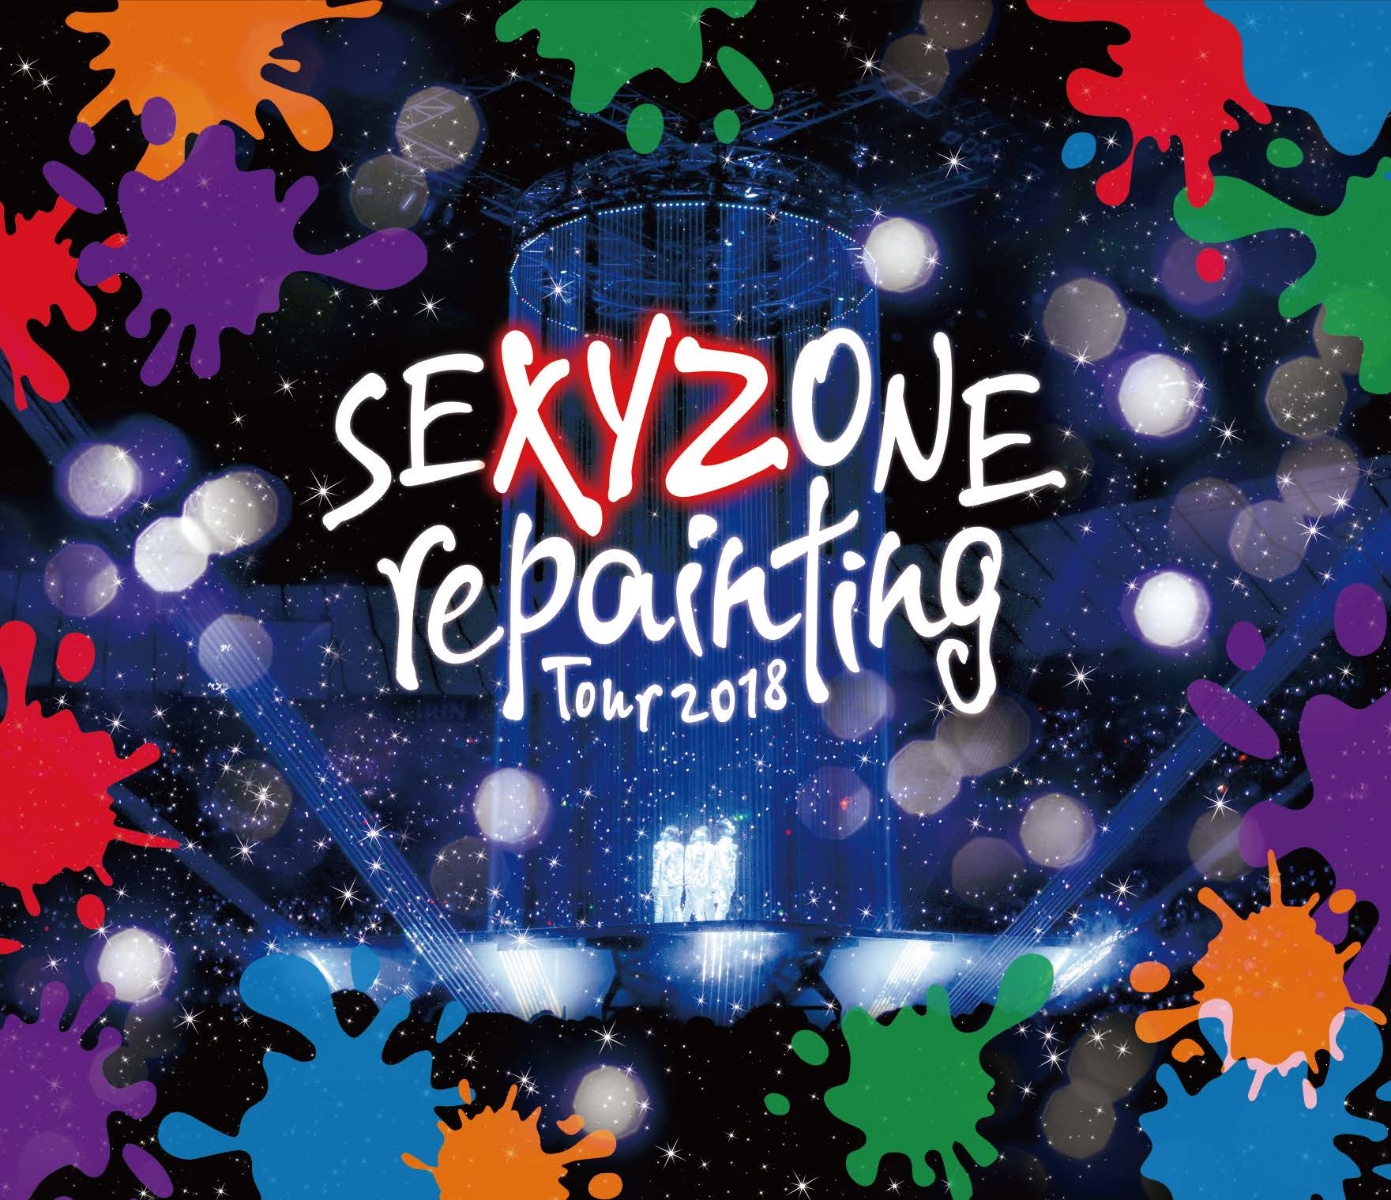 楽天ブックス: SEXYZONE repainting Tour 2018【Blu-ray】 - Sexy Zone